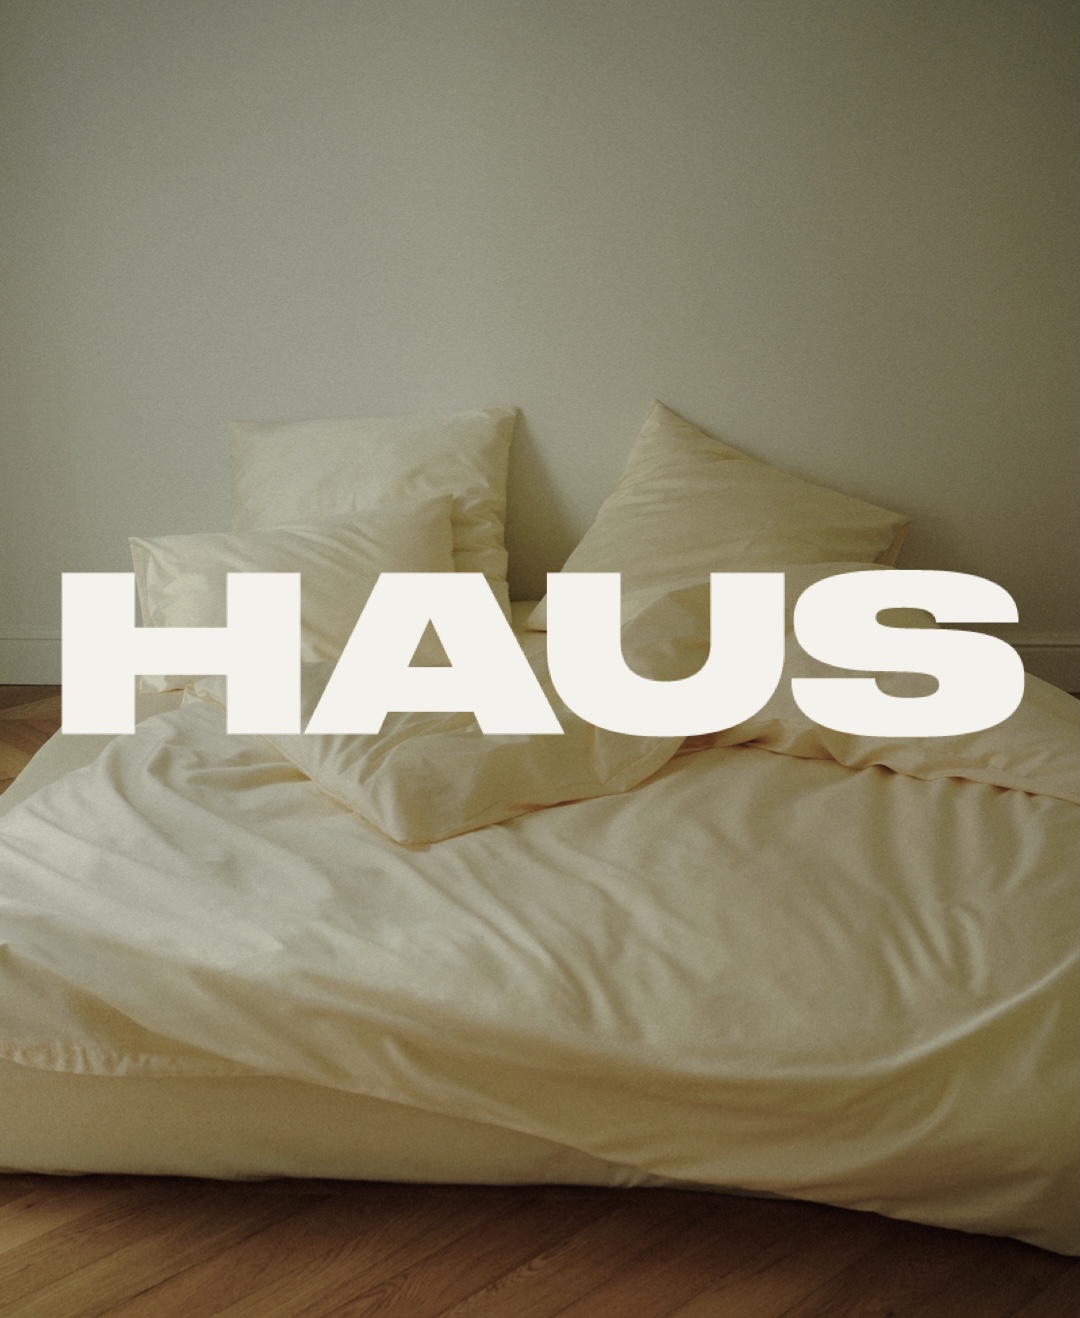 Постельное белье, задающее атмосферу: история бренда Haus (фото 7)